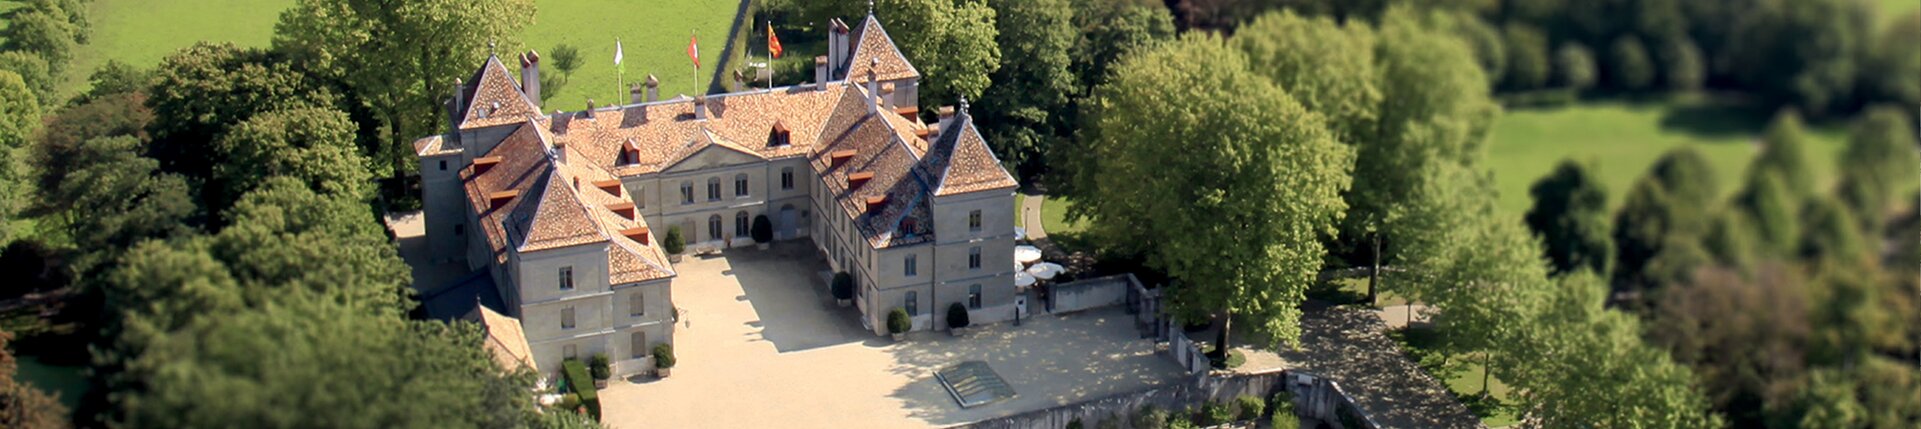 Le Château de Prangins